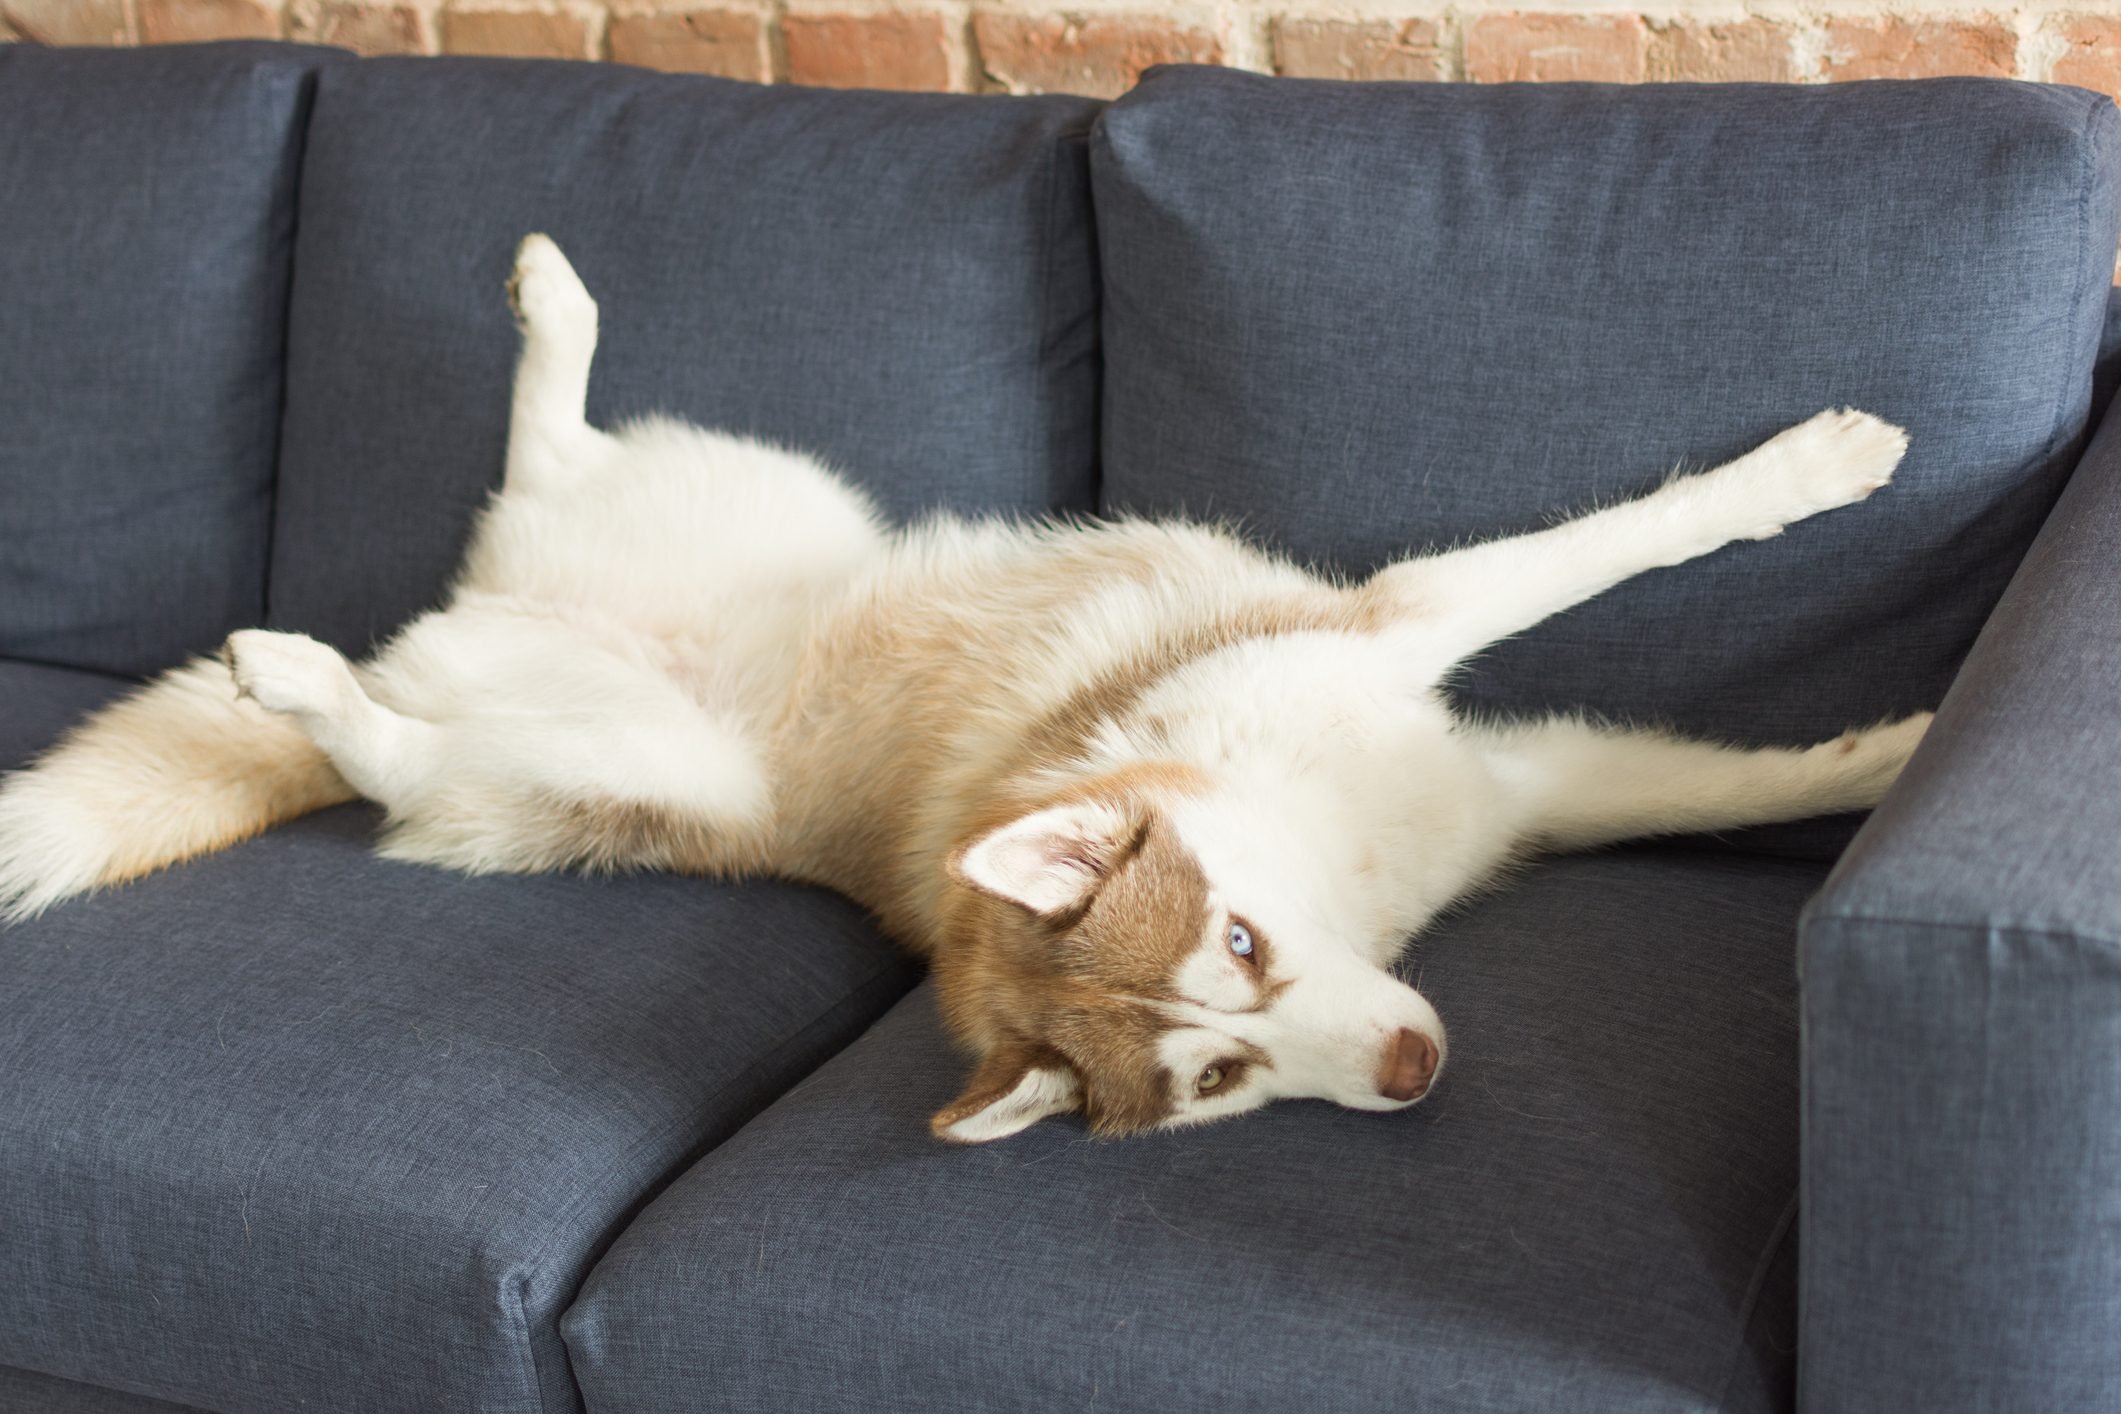 Husky dog is funny sleeping indoors.